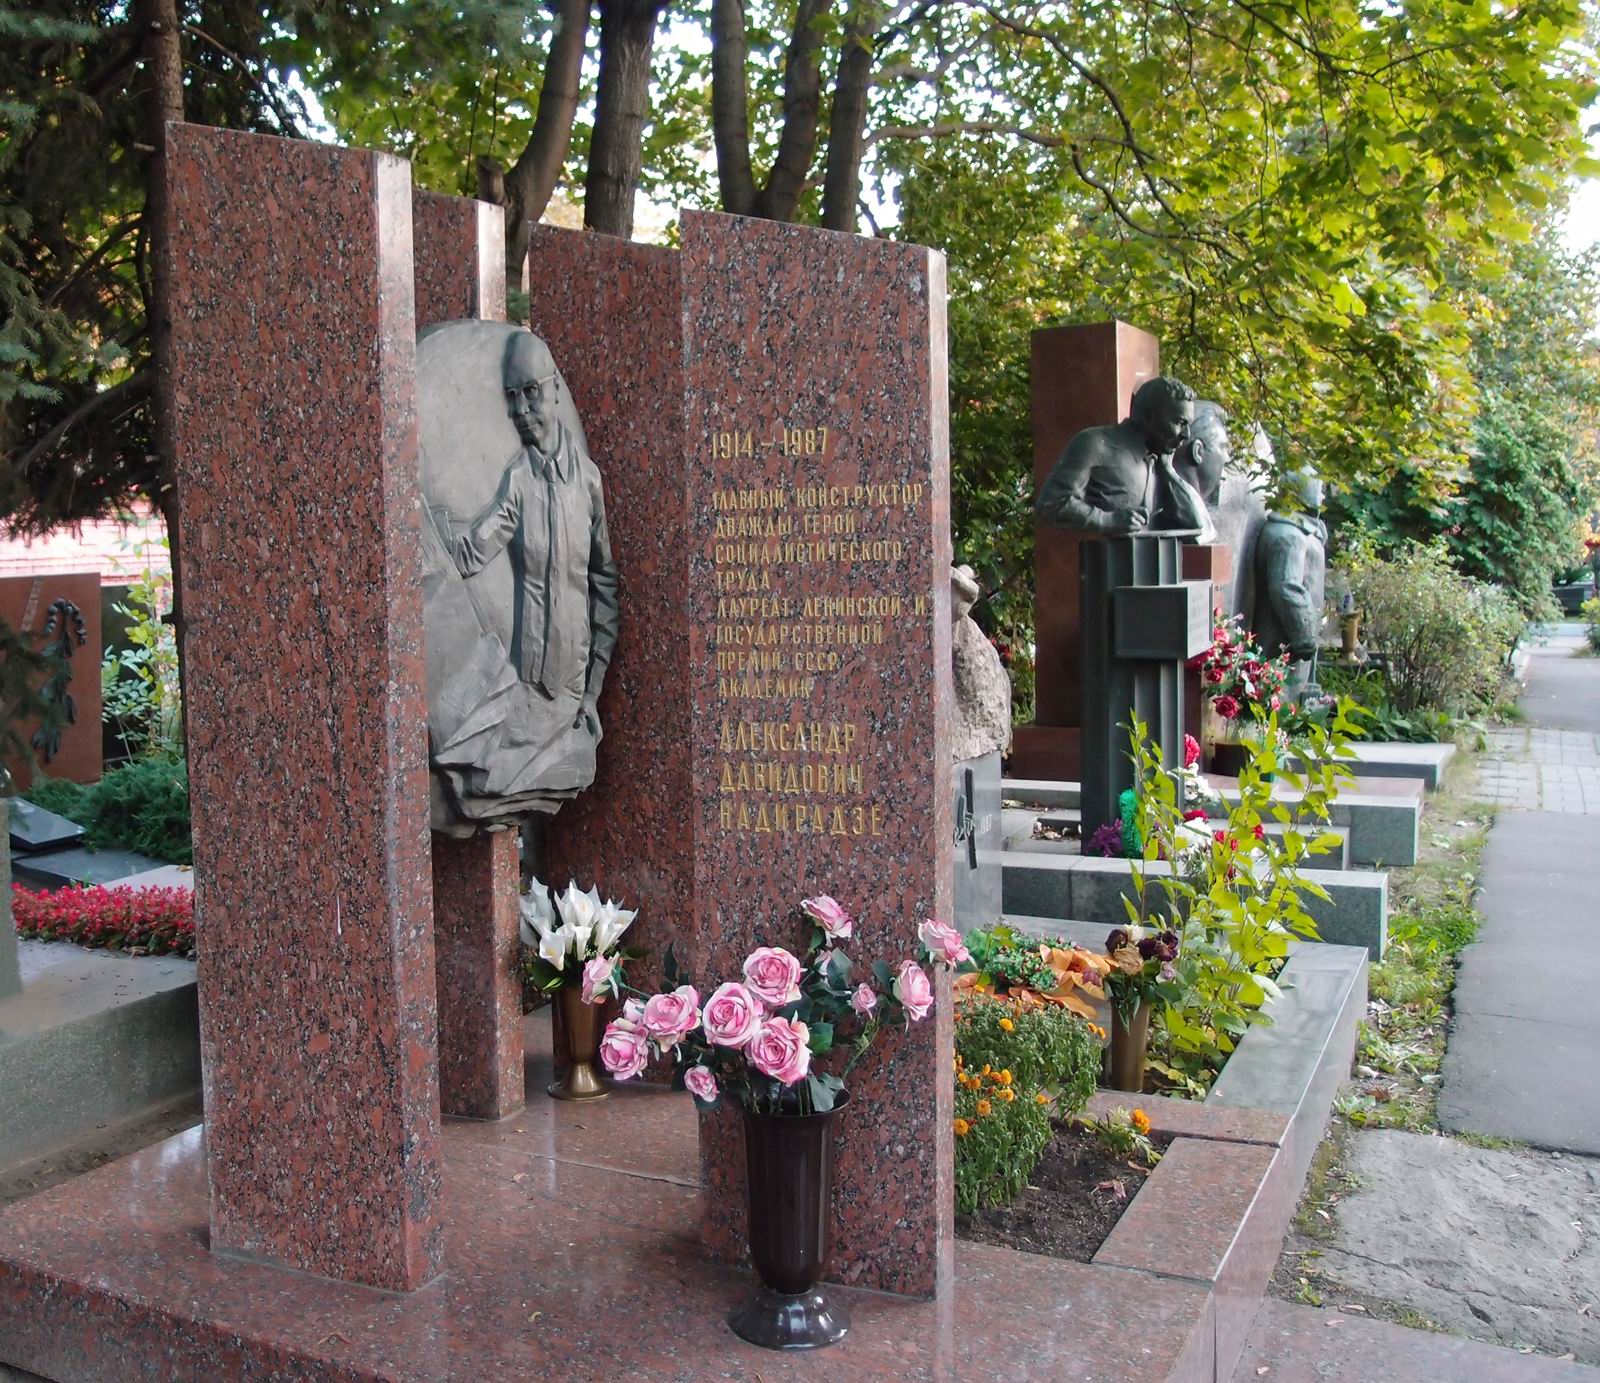 Памятник на могиле Надирадзе А.Д. (1914-1987), ск. М.Смирнов, арх. В.Гапеев, на Новодевичьем кладбище (10-4-13). Нажмите левую кнопку мыши чтобы увидеть фрагмент памятника.